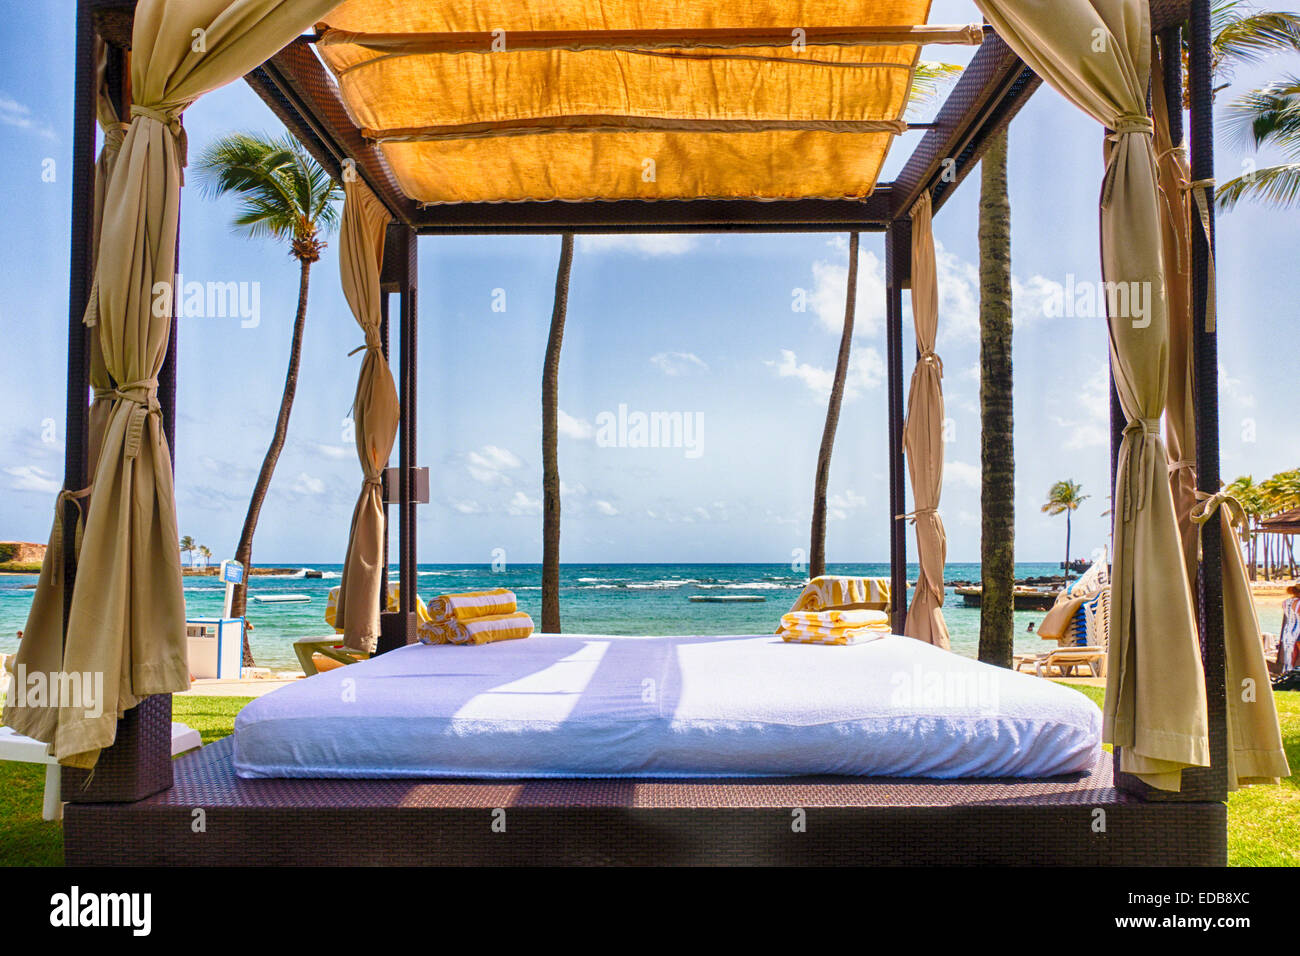 Cabana tente sur une plage des Caraïbes, San Juan, Puerto Rico Banque D'Images